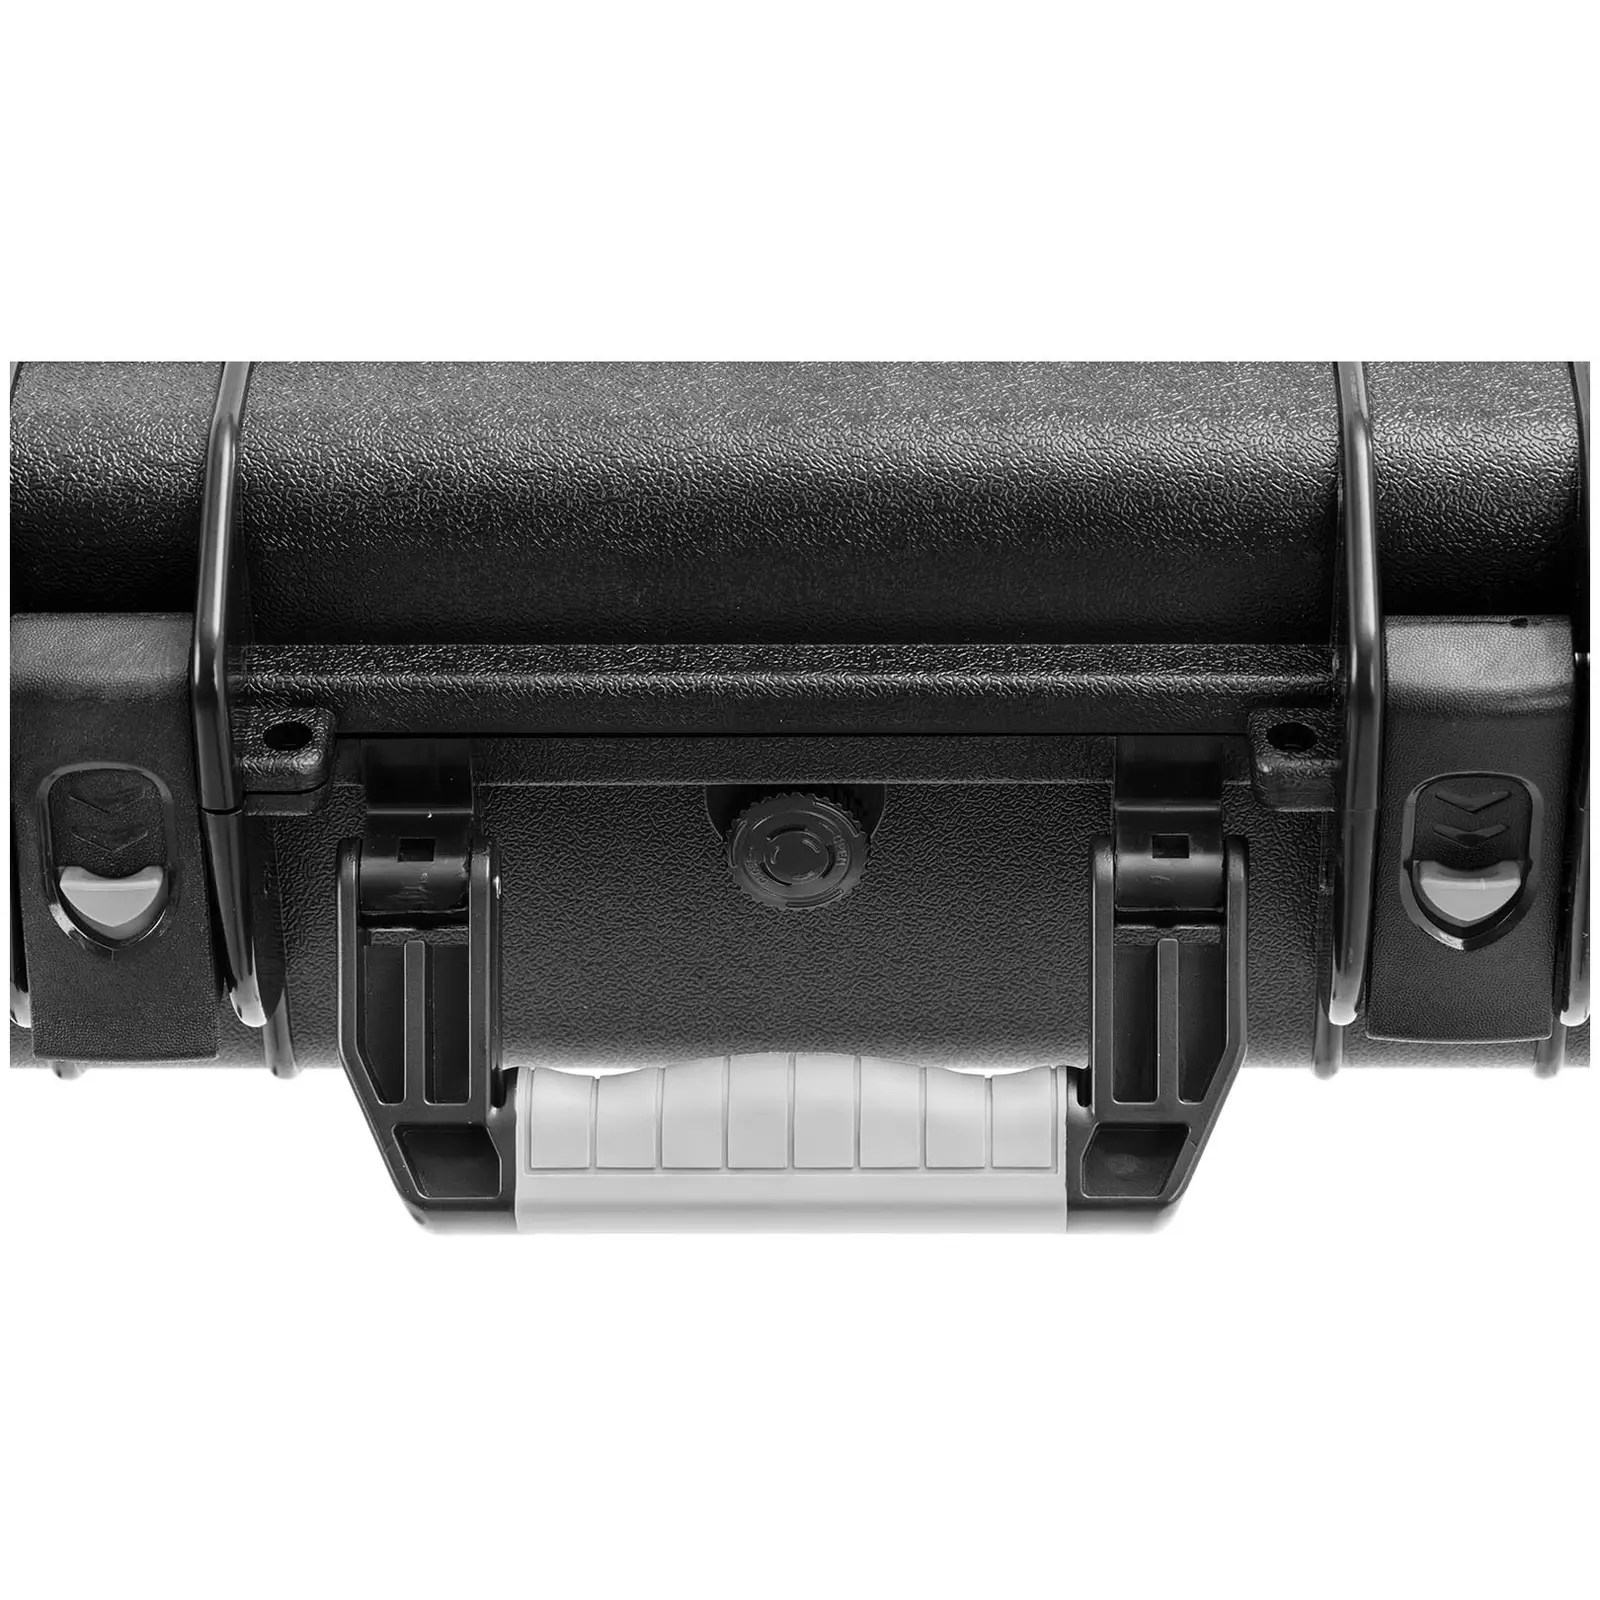 Σκληρή θήκη κάμερας - αδιάβροχη - 15 l - μαύρο - 46,3 x 36,3 x 13,9 cm